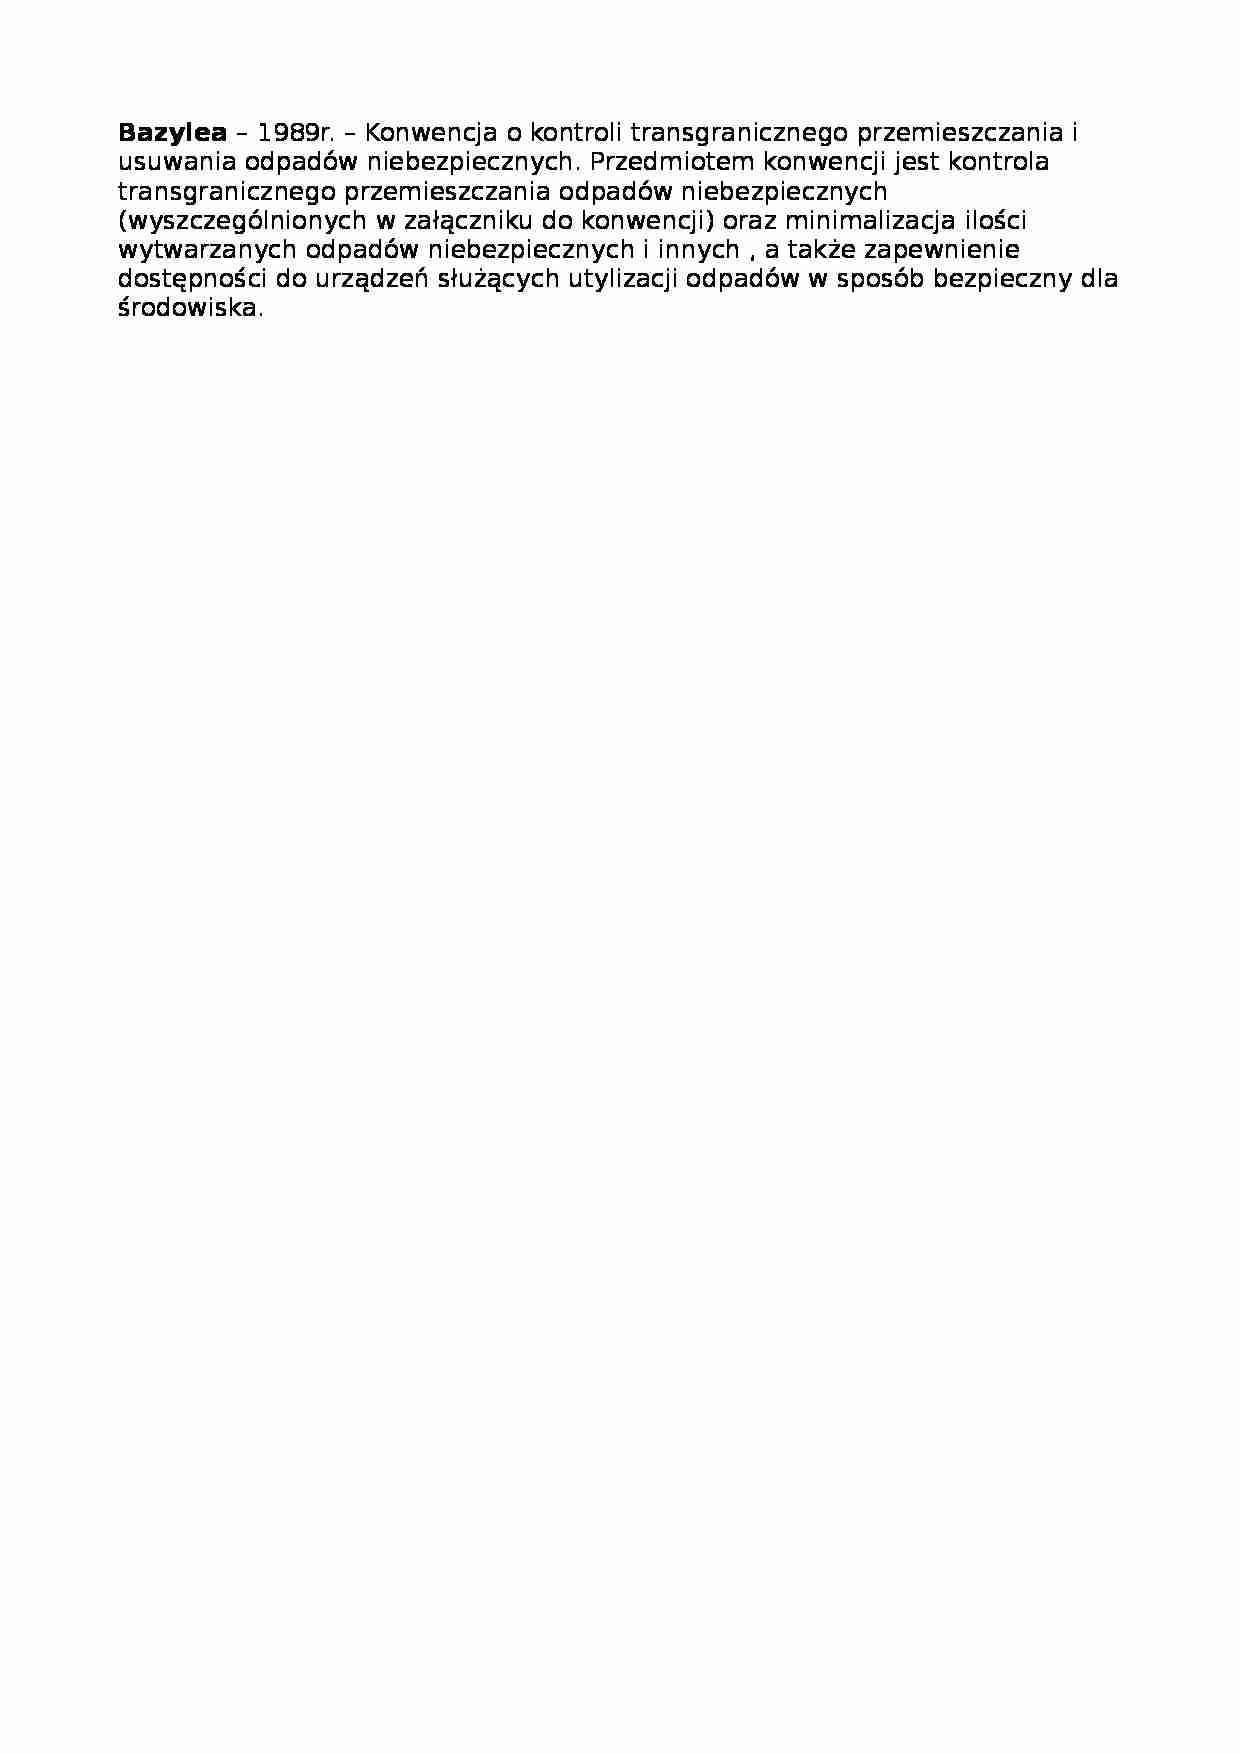 Konwencja miedzynarodowa- Bazylea - strona 1